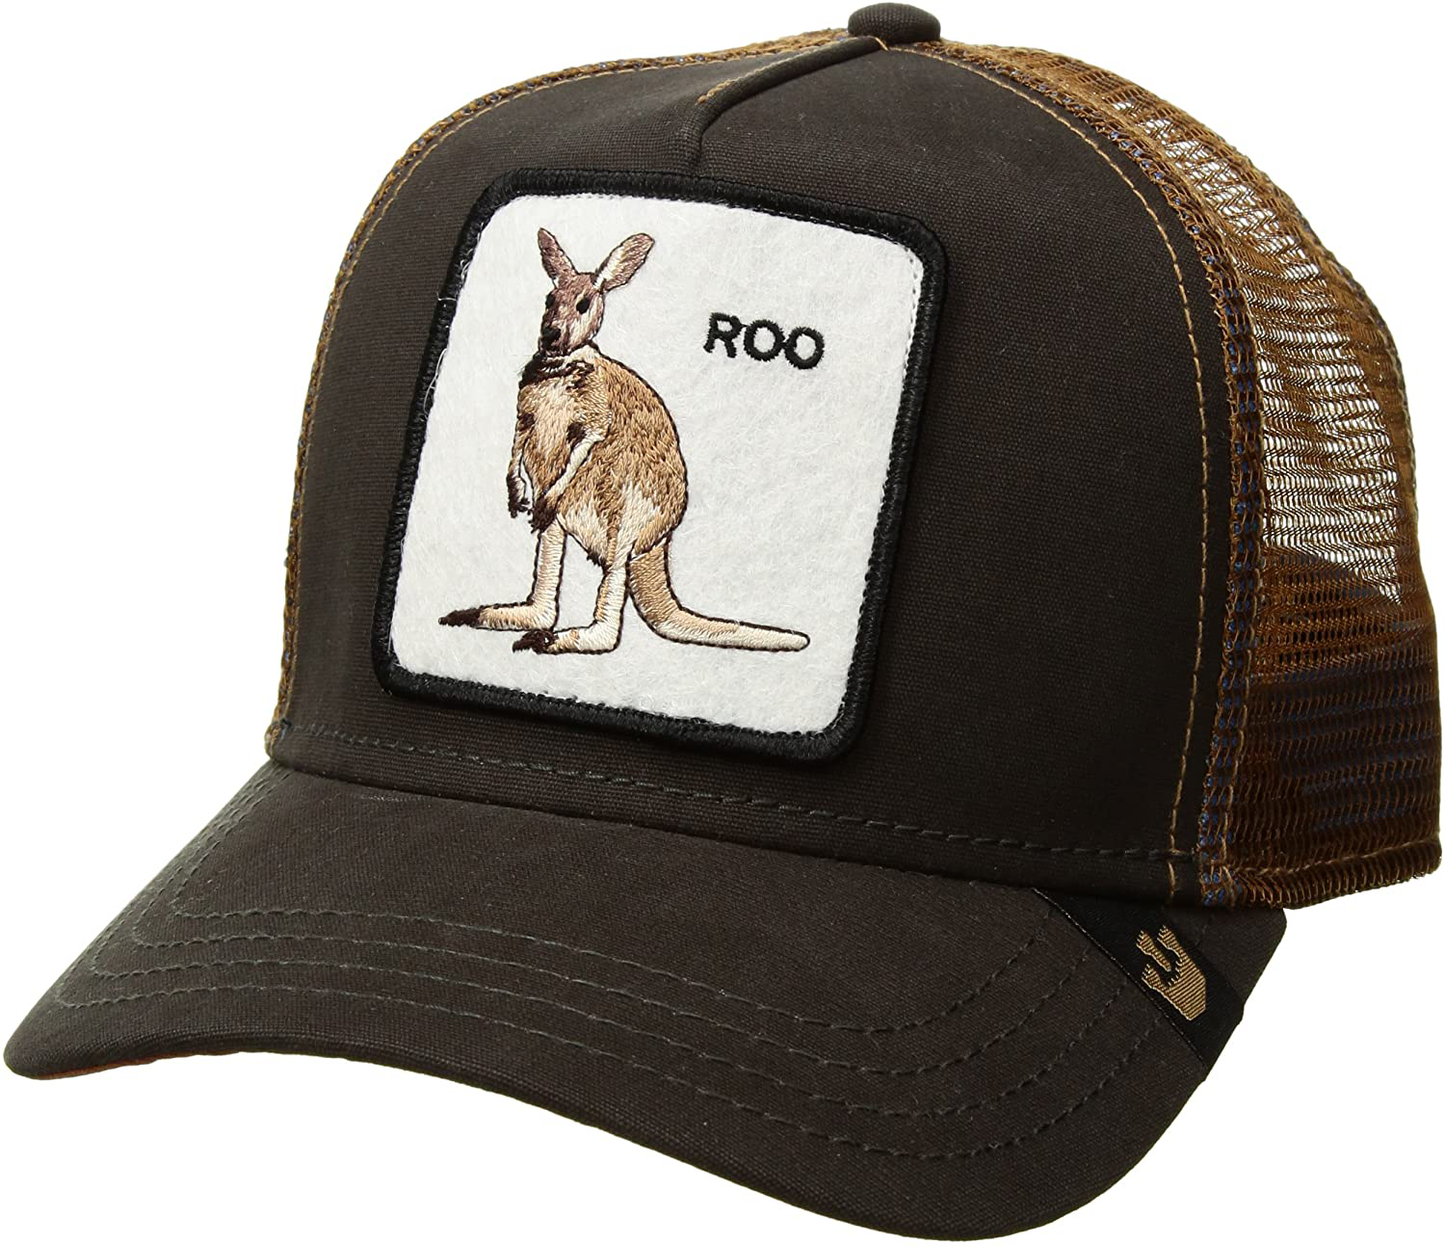 Goorin Bros Brown Kangaroo Roo Men's Trucker Hat